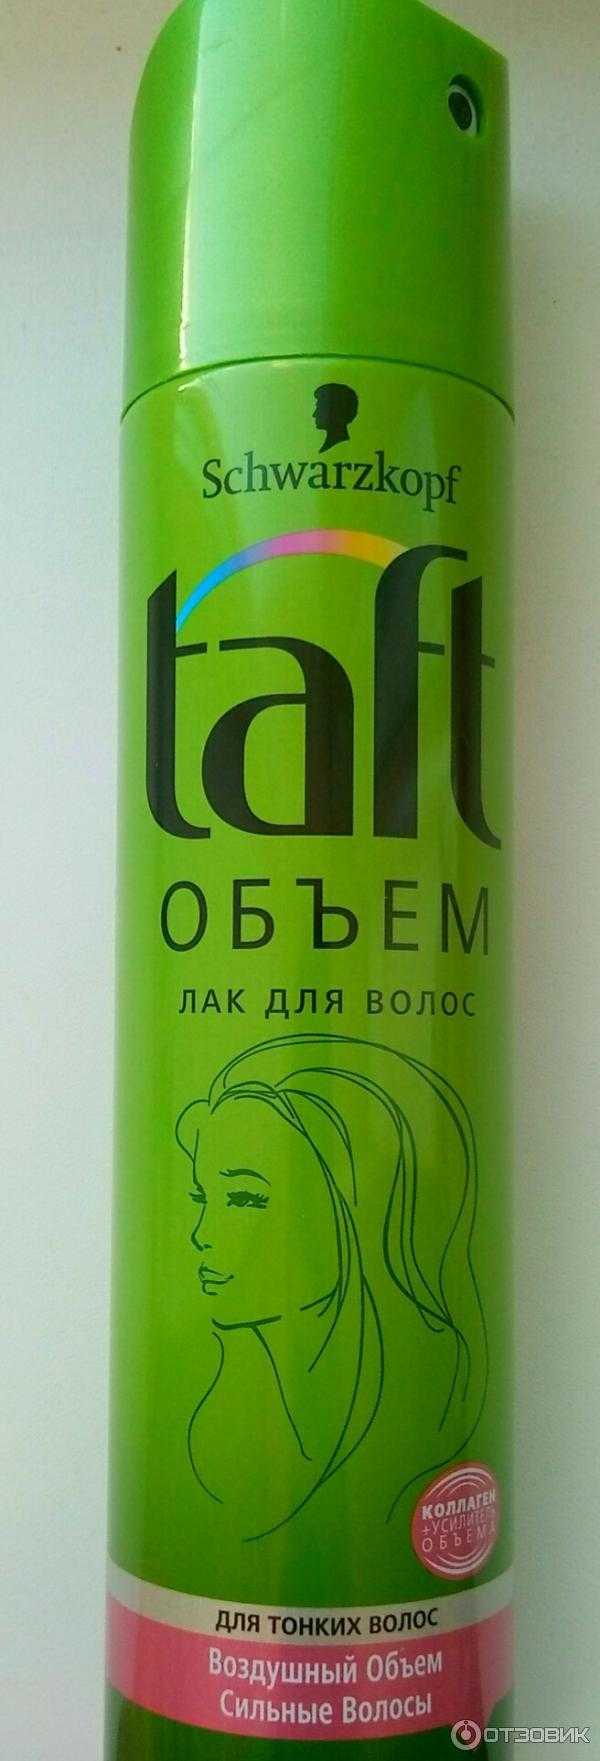 Жидкий лак для волос: продукция марок schwarzkopf и silhouette, taft и спрей прелесть, отзывы о белорусской продукции | n-nu.ru